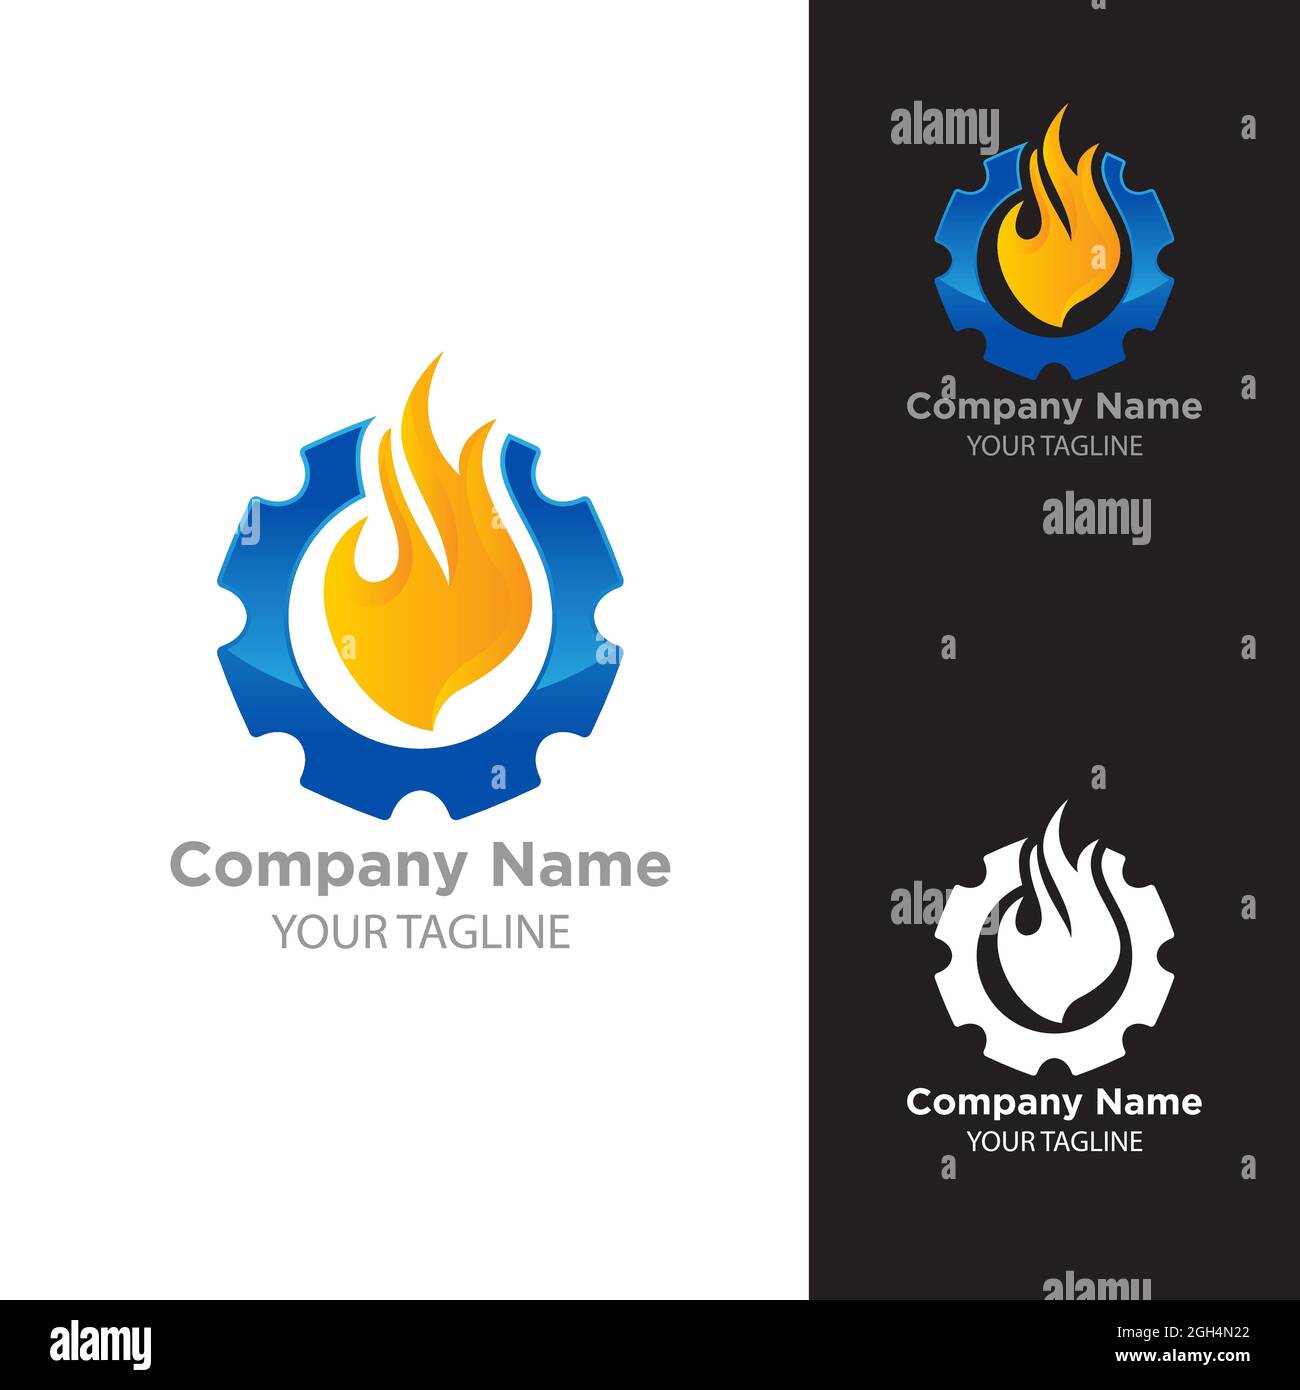 Fire, gas and gear combination logo design. Editable logo design.EPS 10 Stock Vector